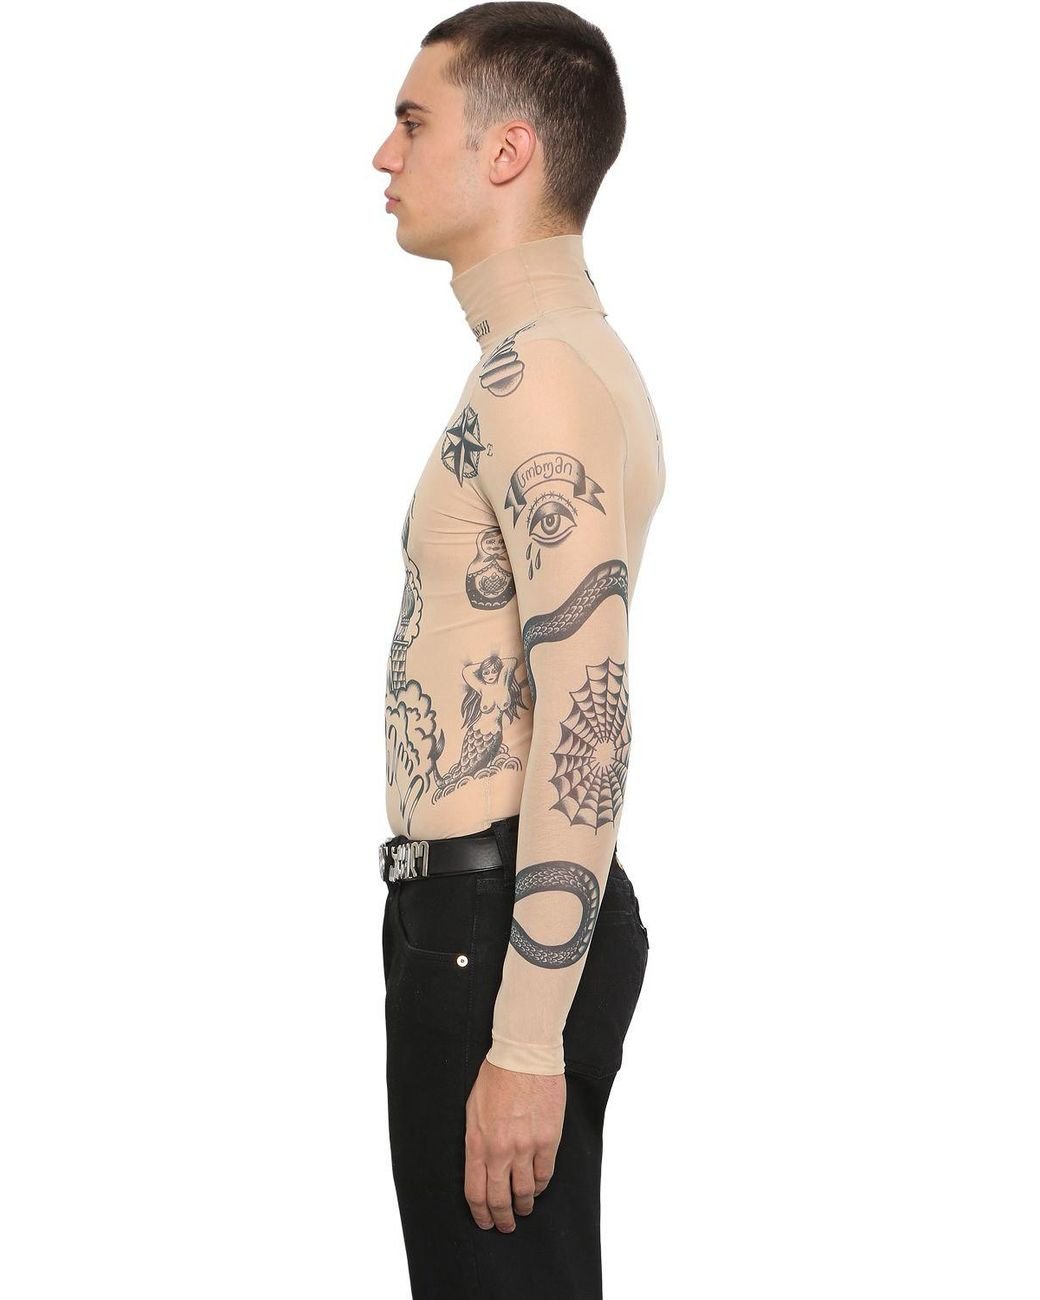 BONBOM Beige  Black Mesh Tattoo Long Sleeve TShirt